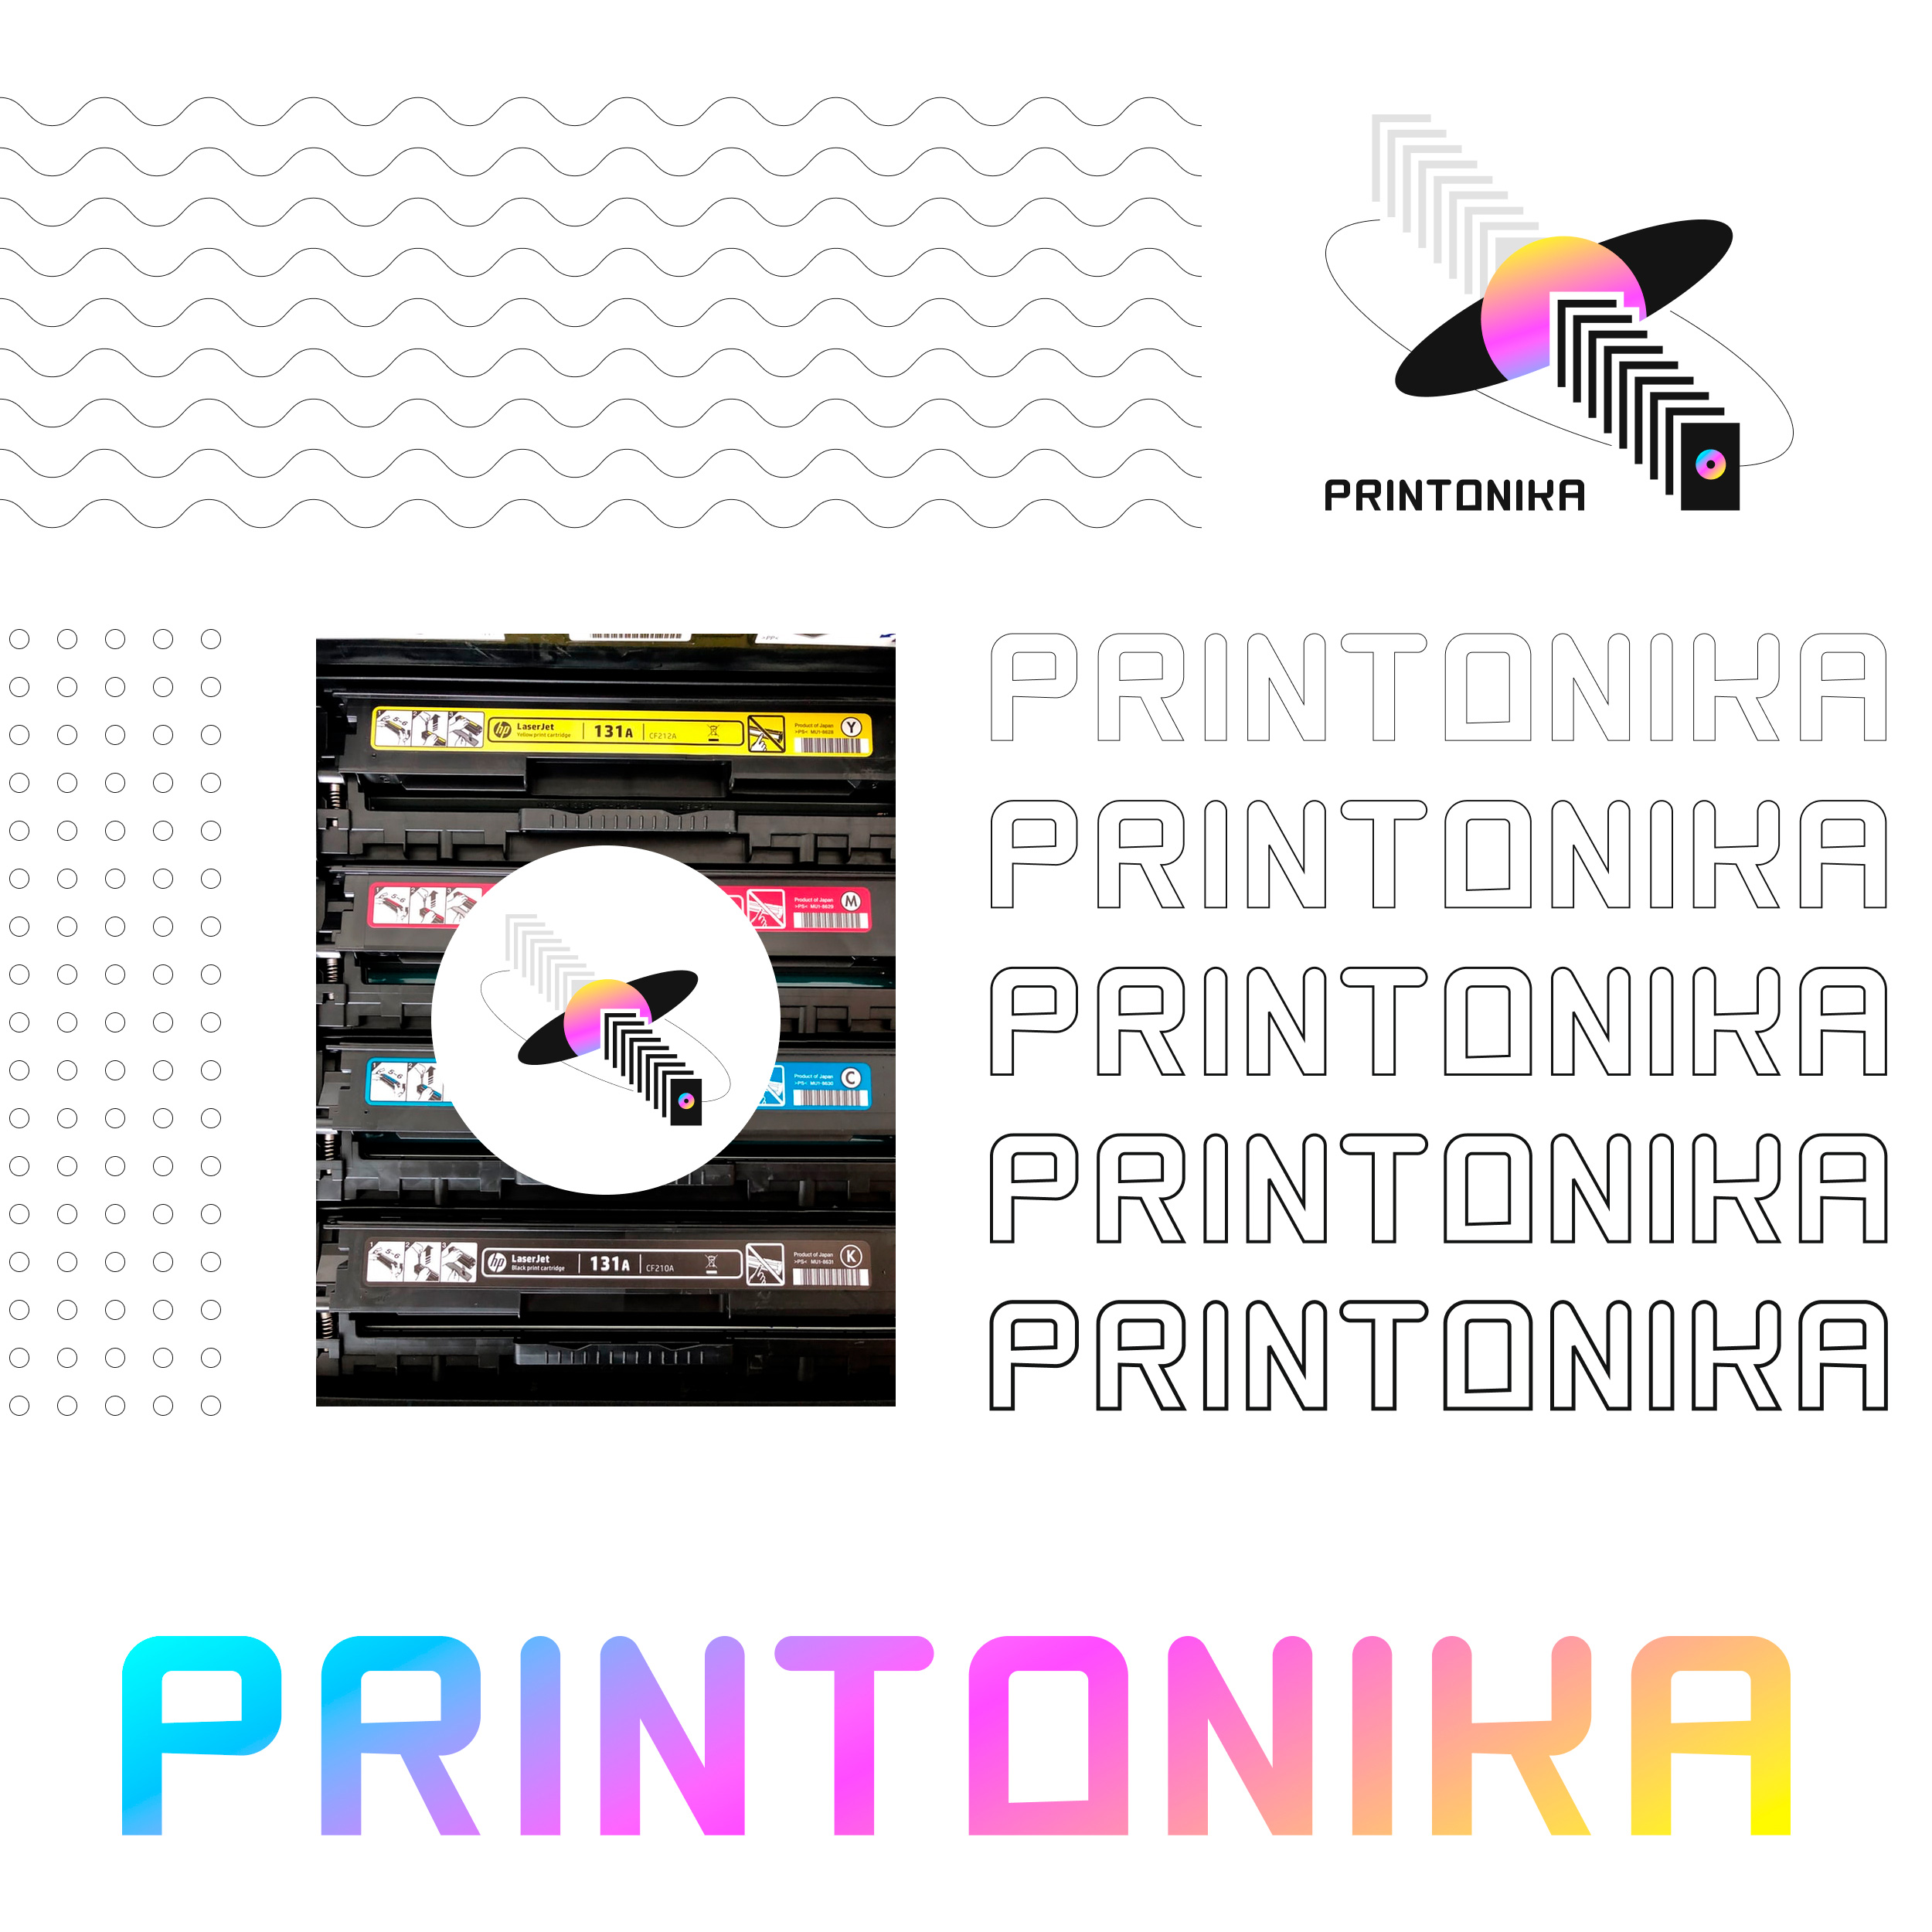 printonika 01